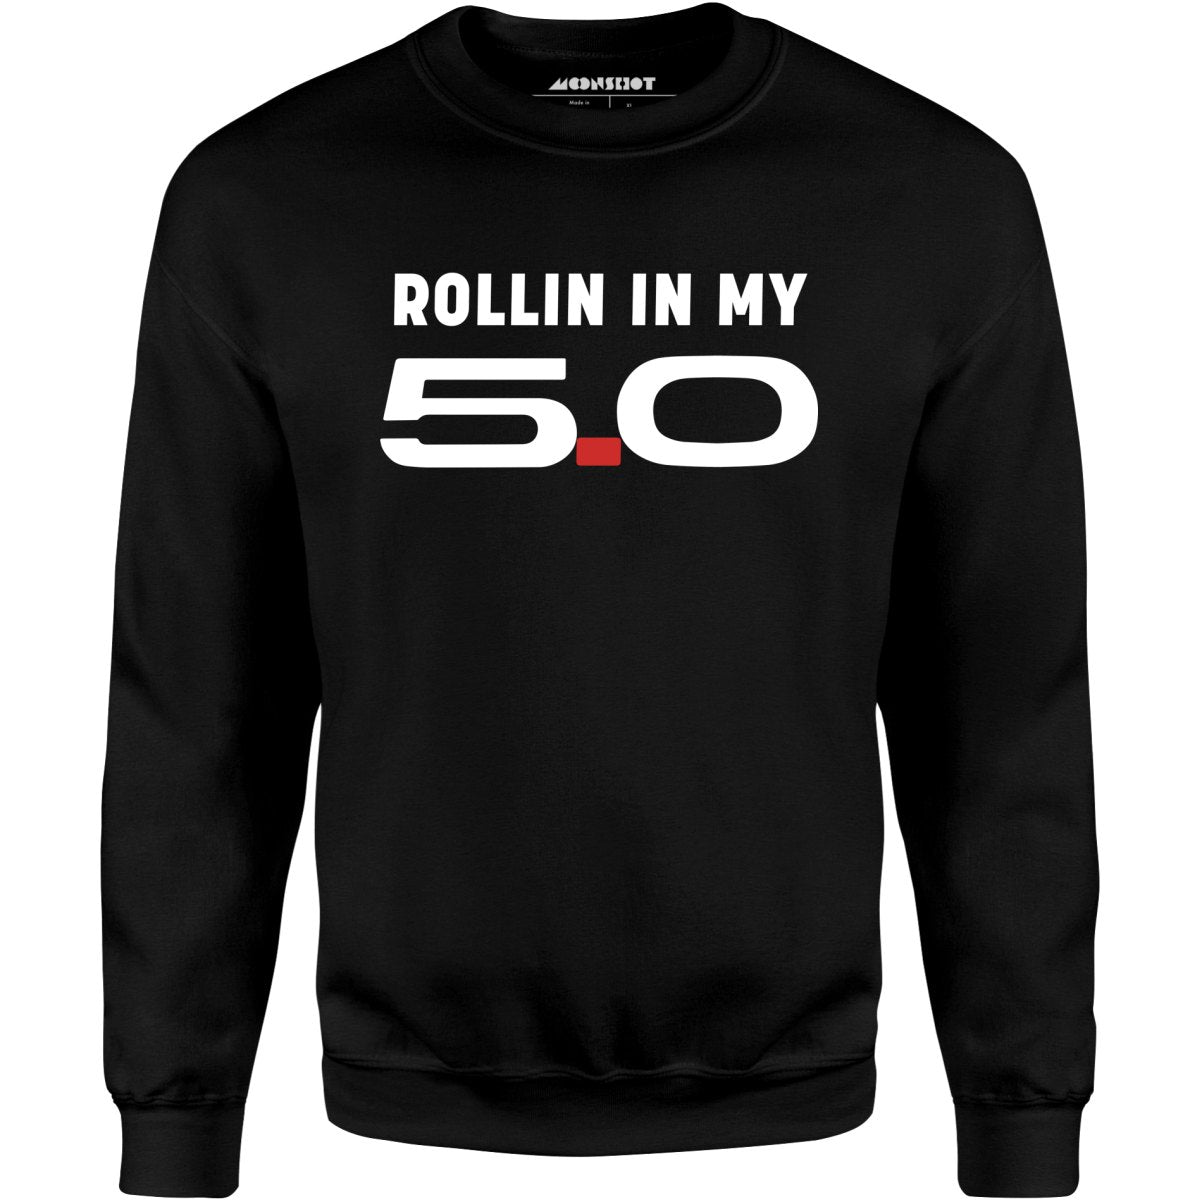 Rollin in my 5.0 - Unisex Sweatshirt